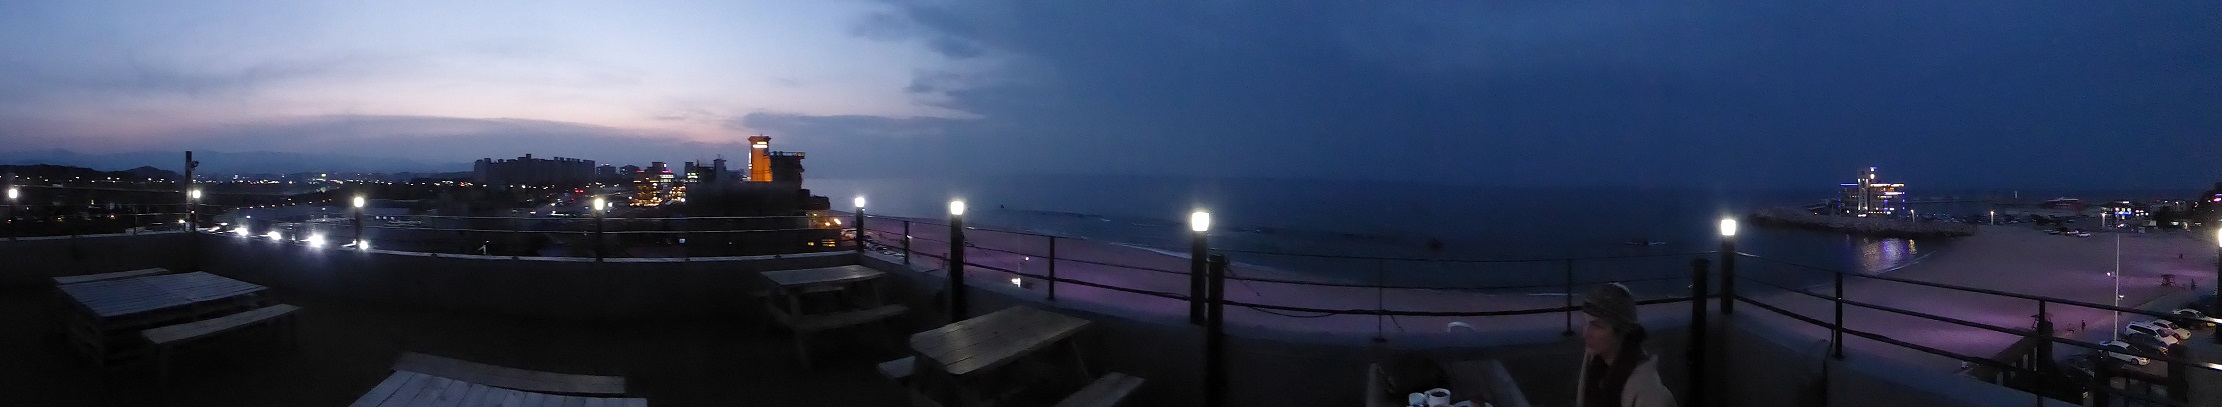 Nachts über dem Strand von Gangneung...